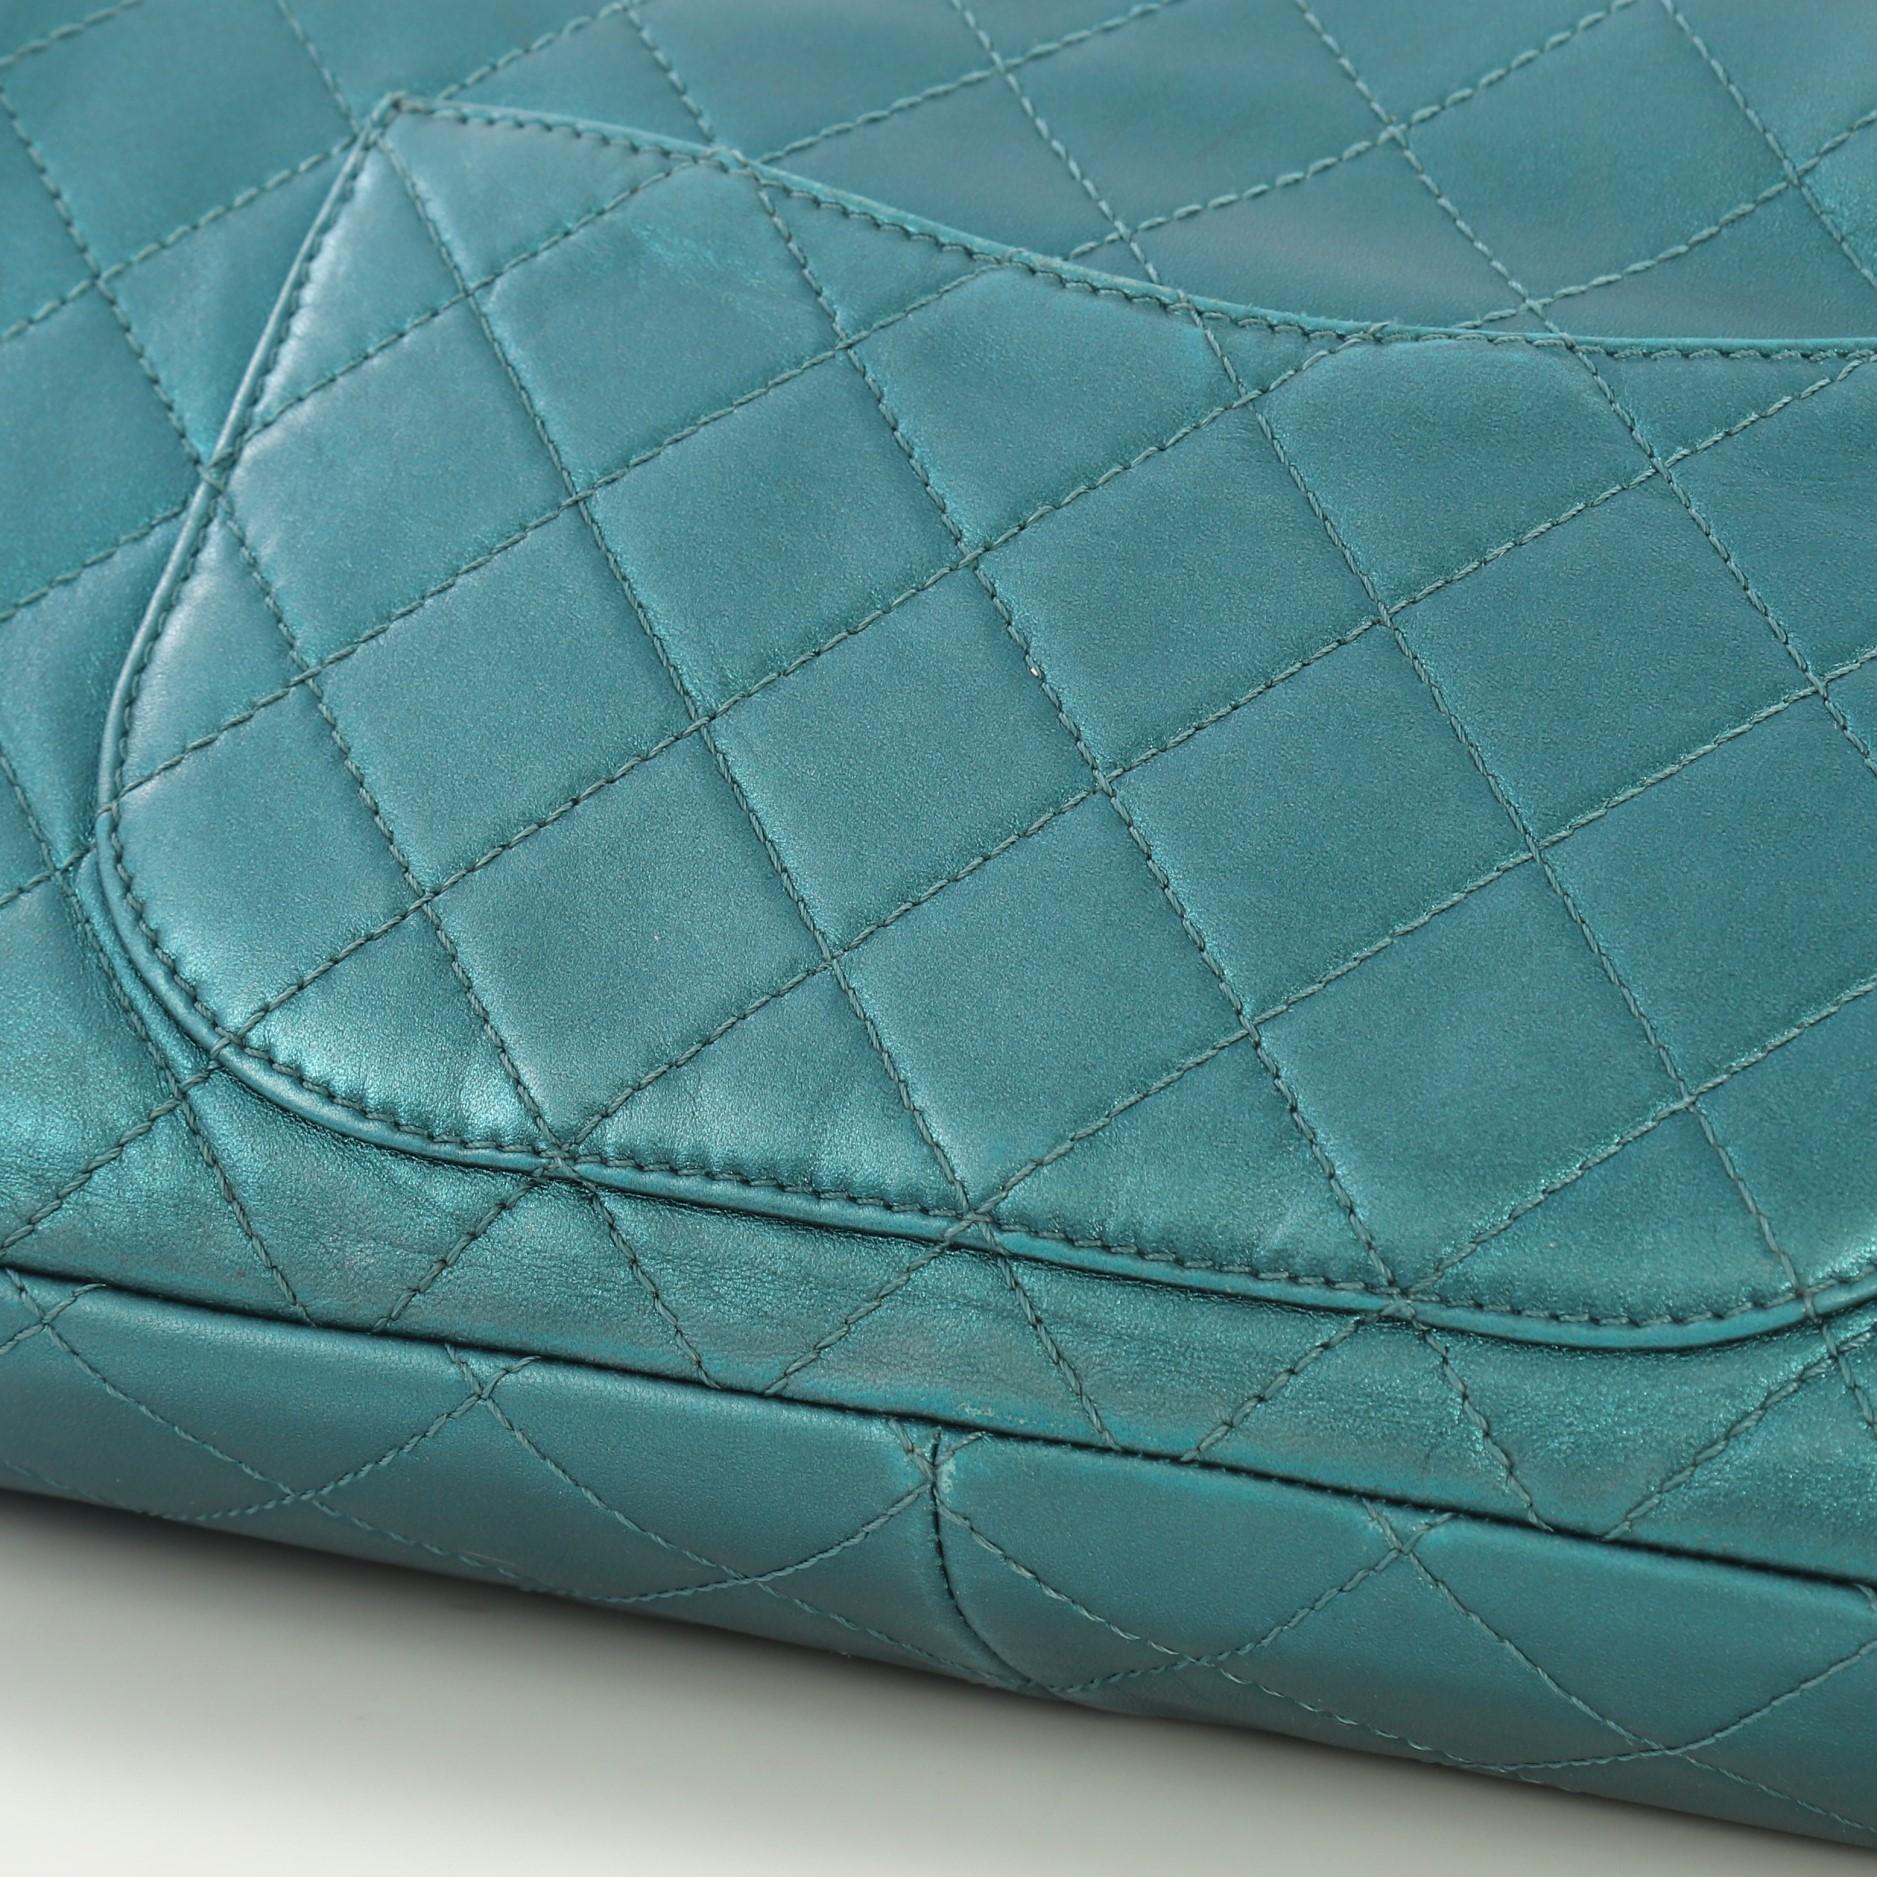 Chanel Reissue 2.55 Handbag Quilted Metallic Aged Calfskin 227 4